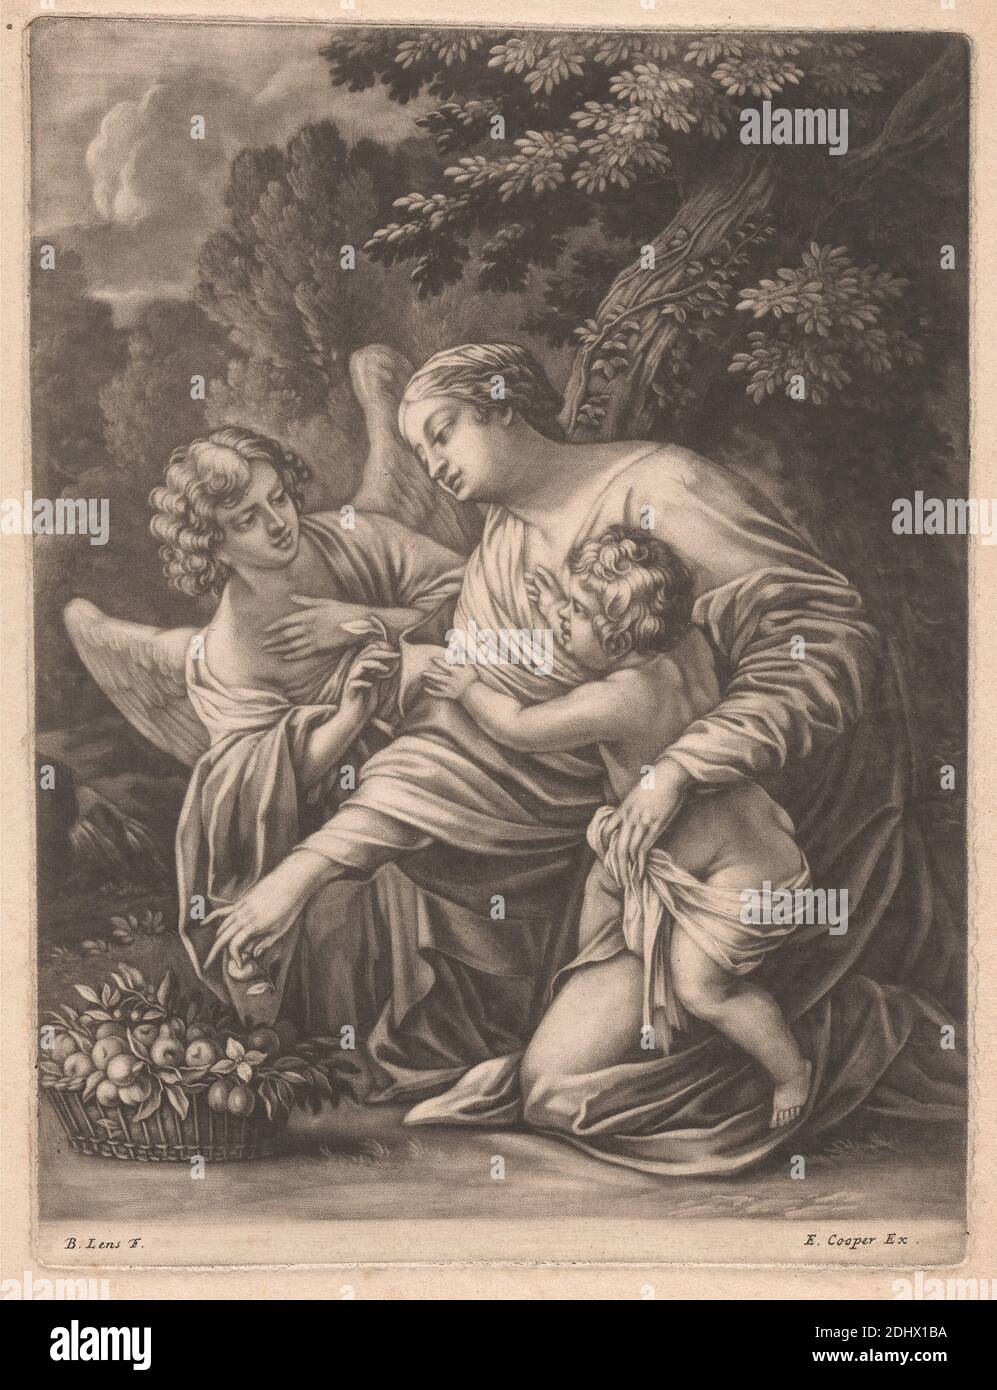 Madonna, Kind und Engel, Druck von Bernard Lens, 1659–1725, britisch, undatiert, Mezzotint auf mäßig dickem, mäßig strukturiertem, cremefarbenem Papier, Blatt: 10 7/16 × 7 15/16 Zoll (26.5 × 20.2 cm), Teller: 9 1/4 × 7 Zoll (23.5 × 17.8 cm), und Bild: 8 7/8 × 7 Zoll (22.5 × 17.8 cm), Engel, Baby, Korb, Christentum, Trost, Früchte, Sammeln, Halten, Knien, Madonna: Dh Maria mit dem Christus-Kind, Mutter, erreichen, religiöse und mythologische Thema, Bäume, Flügel Stockfoto